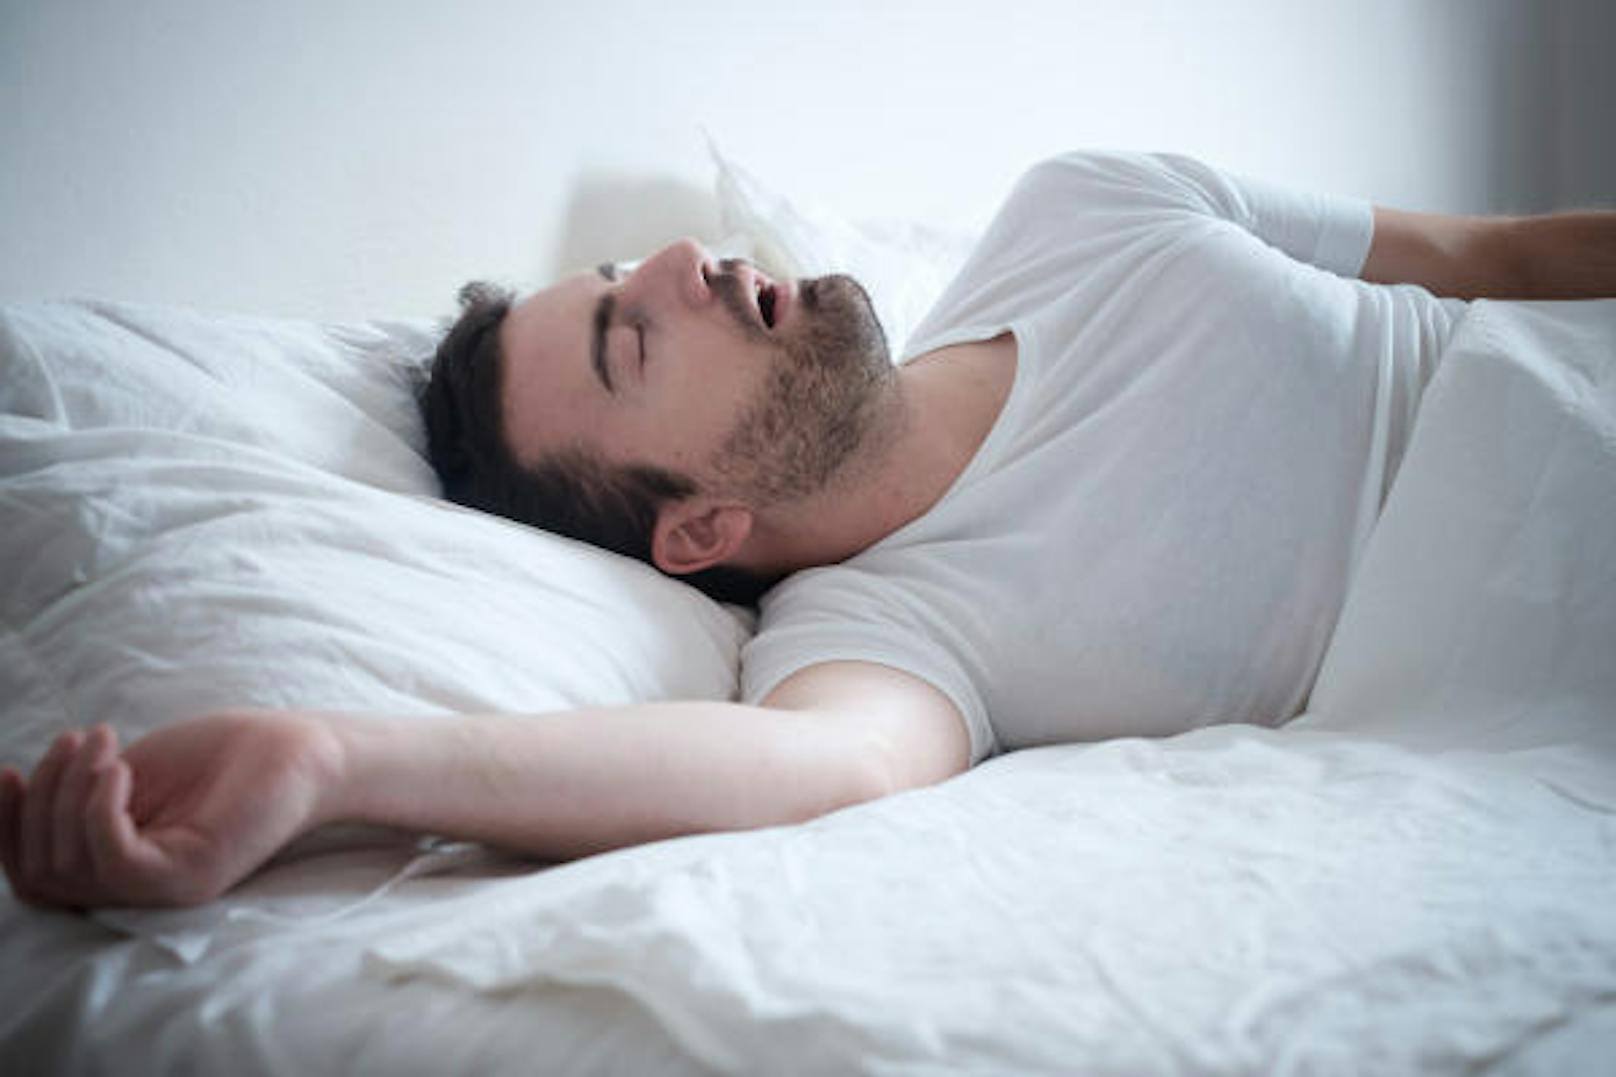 <b>5. Du schnarchst</b>
Die Folgen von Schlafapnoe sind nicht nur eine schlechtere Nachtruhe sowie Müdigkeit und Erschöpfung tagsüber, sondern auch damit verbundene gesundheitliche Risiken: Menschen mit Schlafapnoe haben ein höheres Risiko für Herzinfarkt und Bluthochdruck.